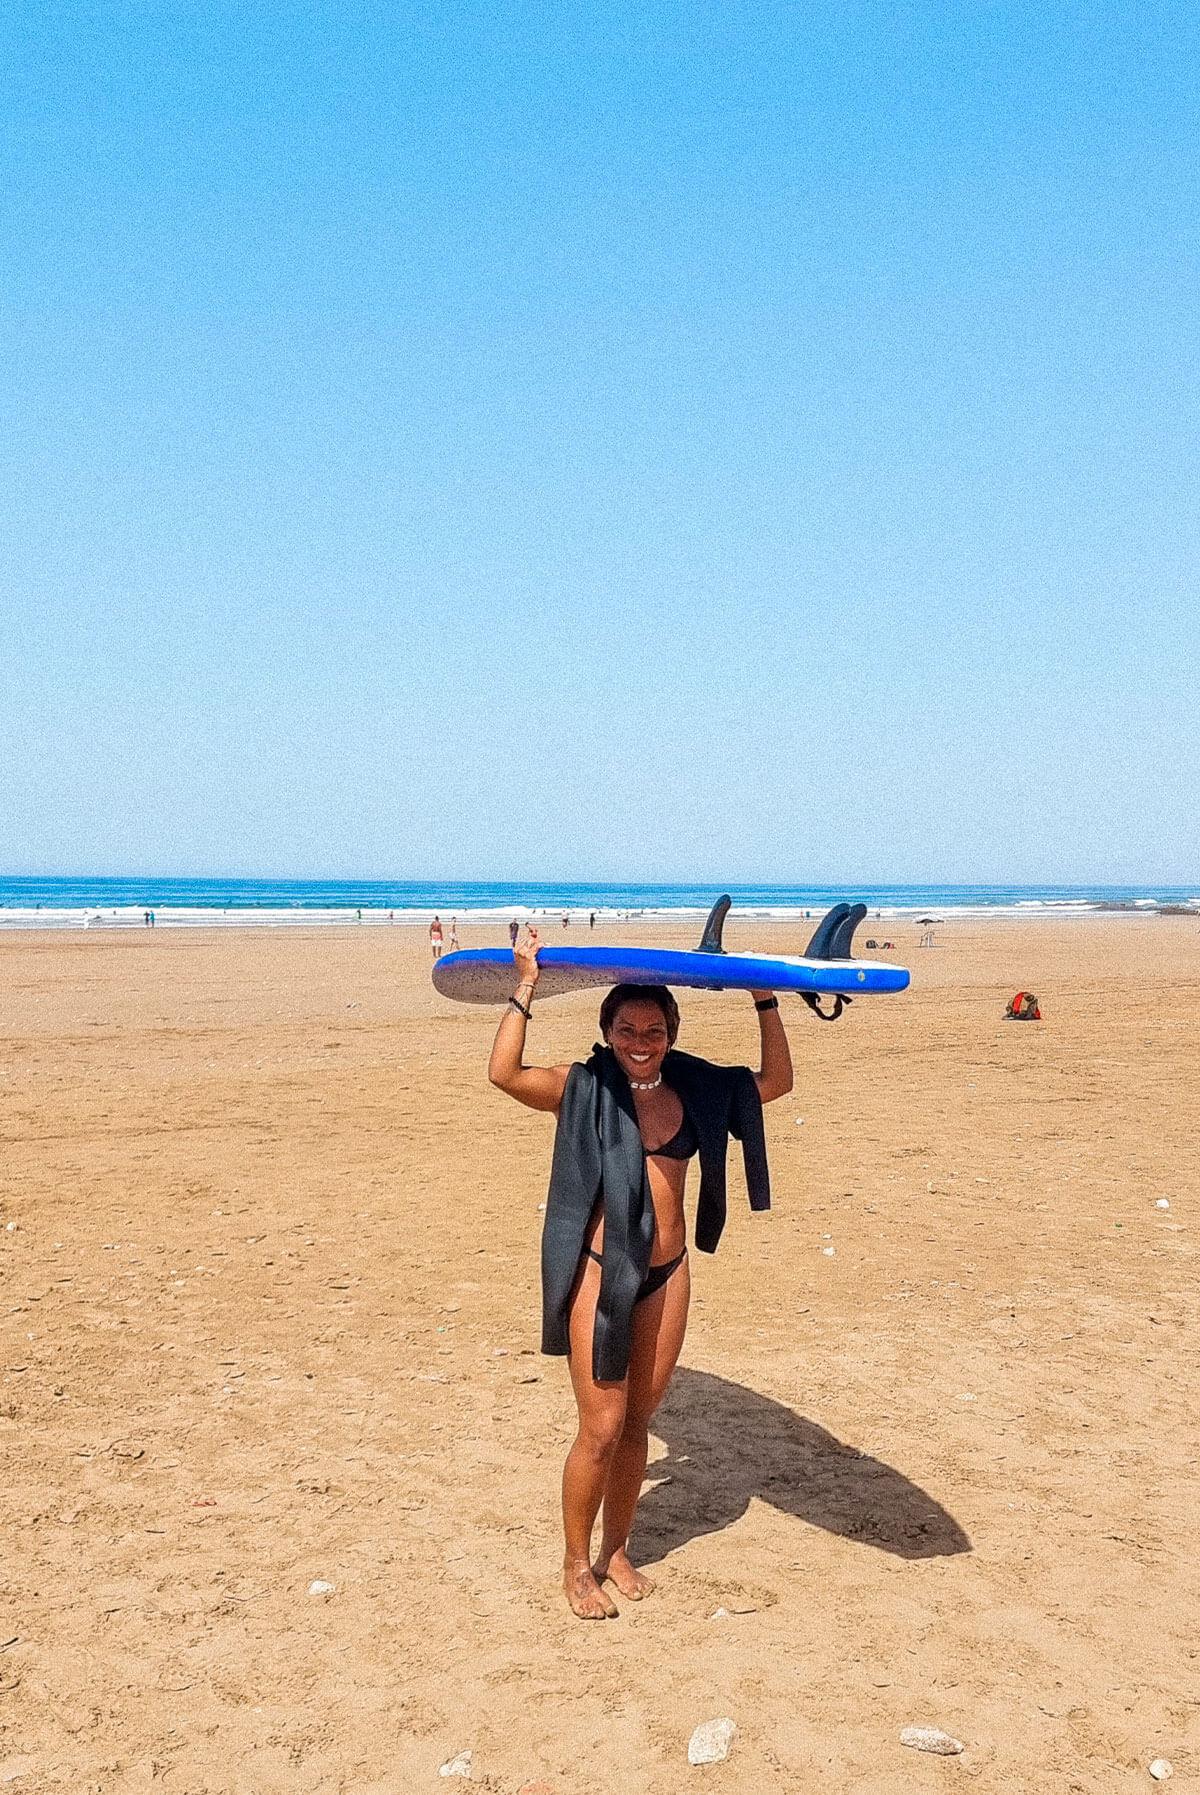 ONA, Sport Bien-être - Séjours sportifs et ressourçants - The Yogi Surfer - Tamraght, Maroc